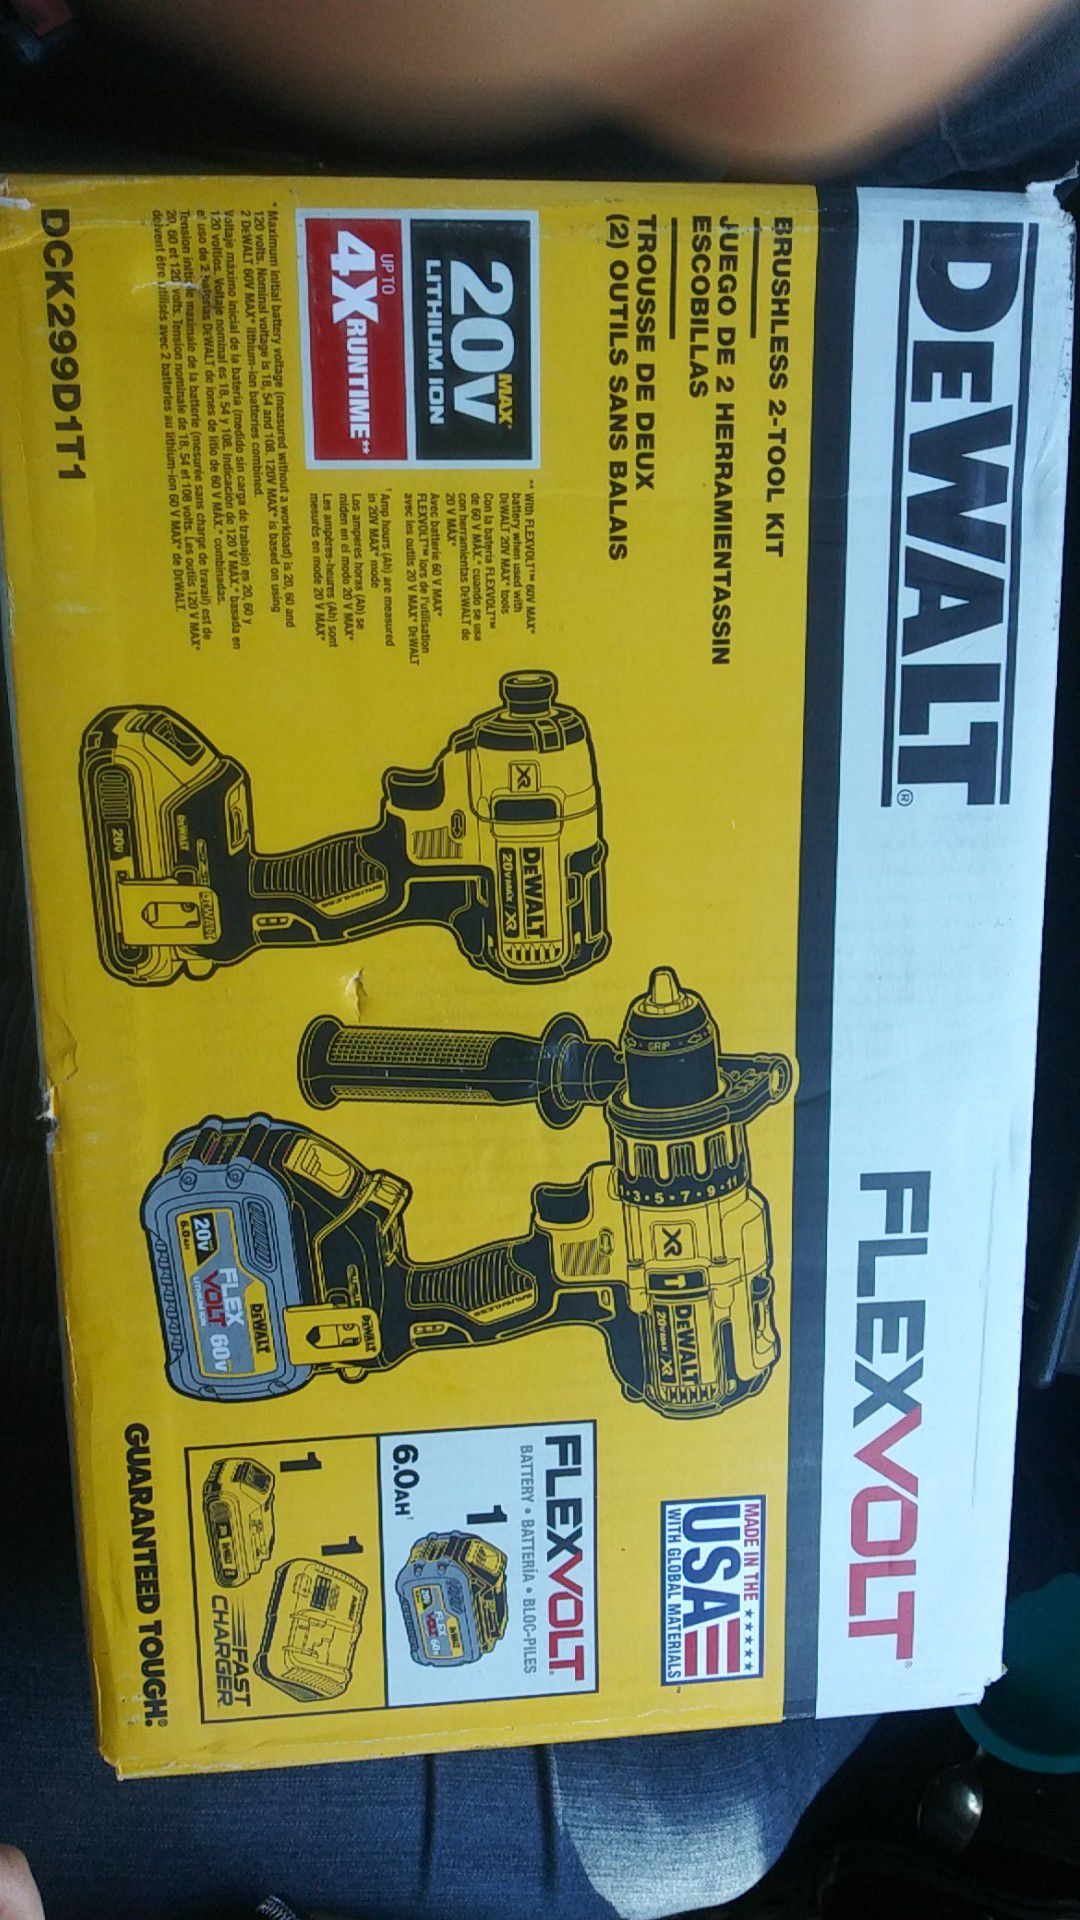 Dewalt flexvolt 60v hammer and impact drill kit